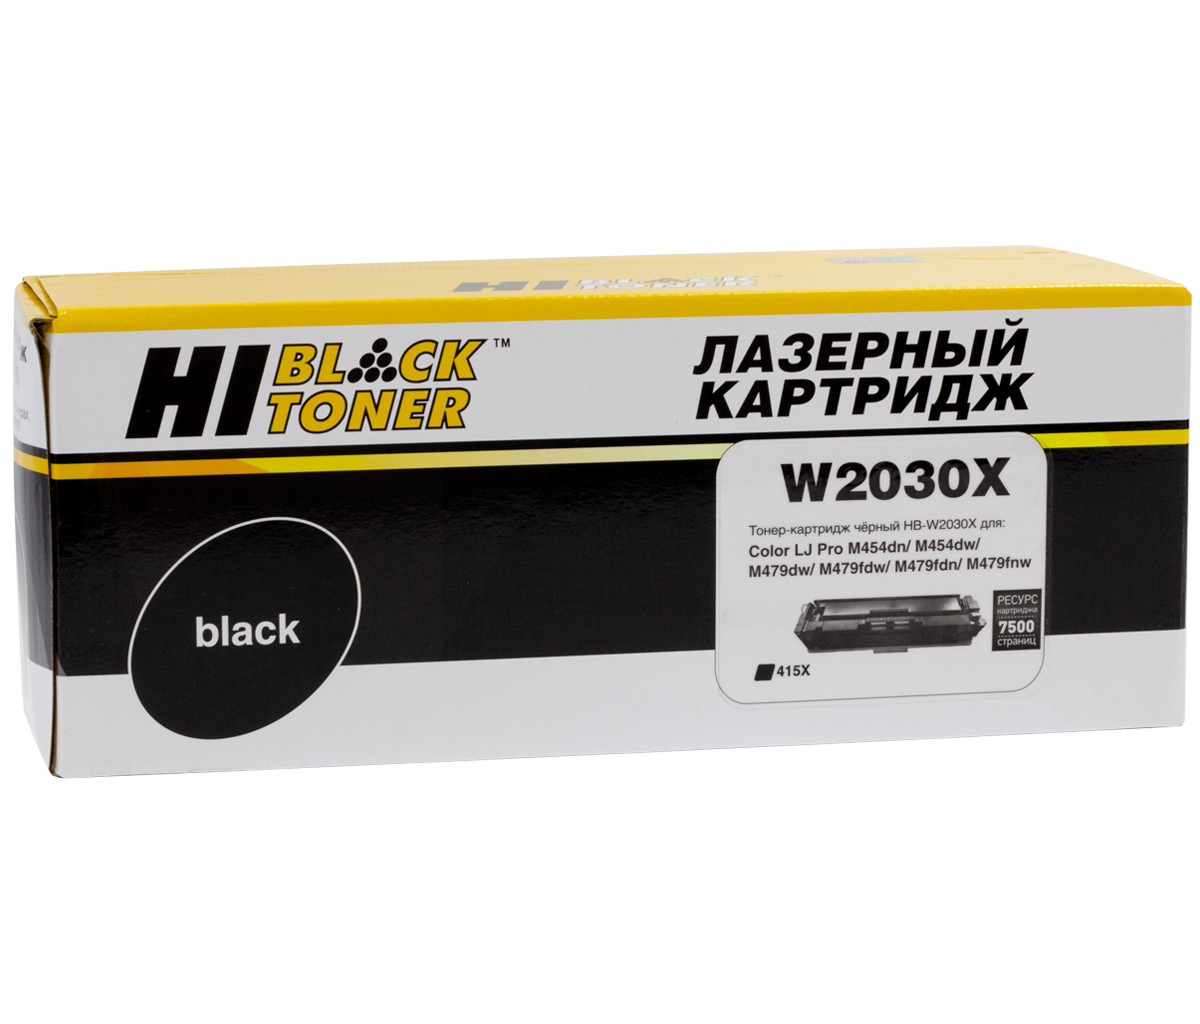 Картридж 415X/ W2030X (для HP Color LaserJet M454/ M480/ Pro M454/ M479) Hi-Black, чёрный